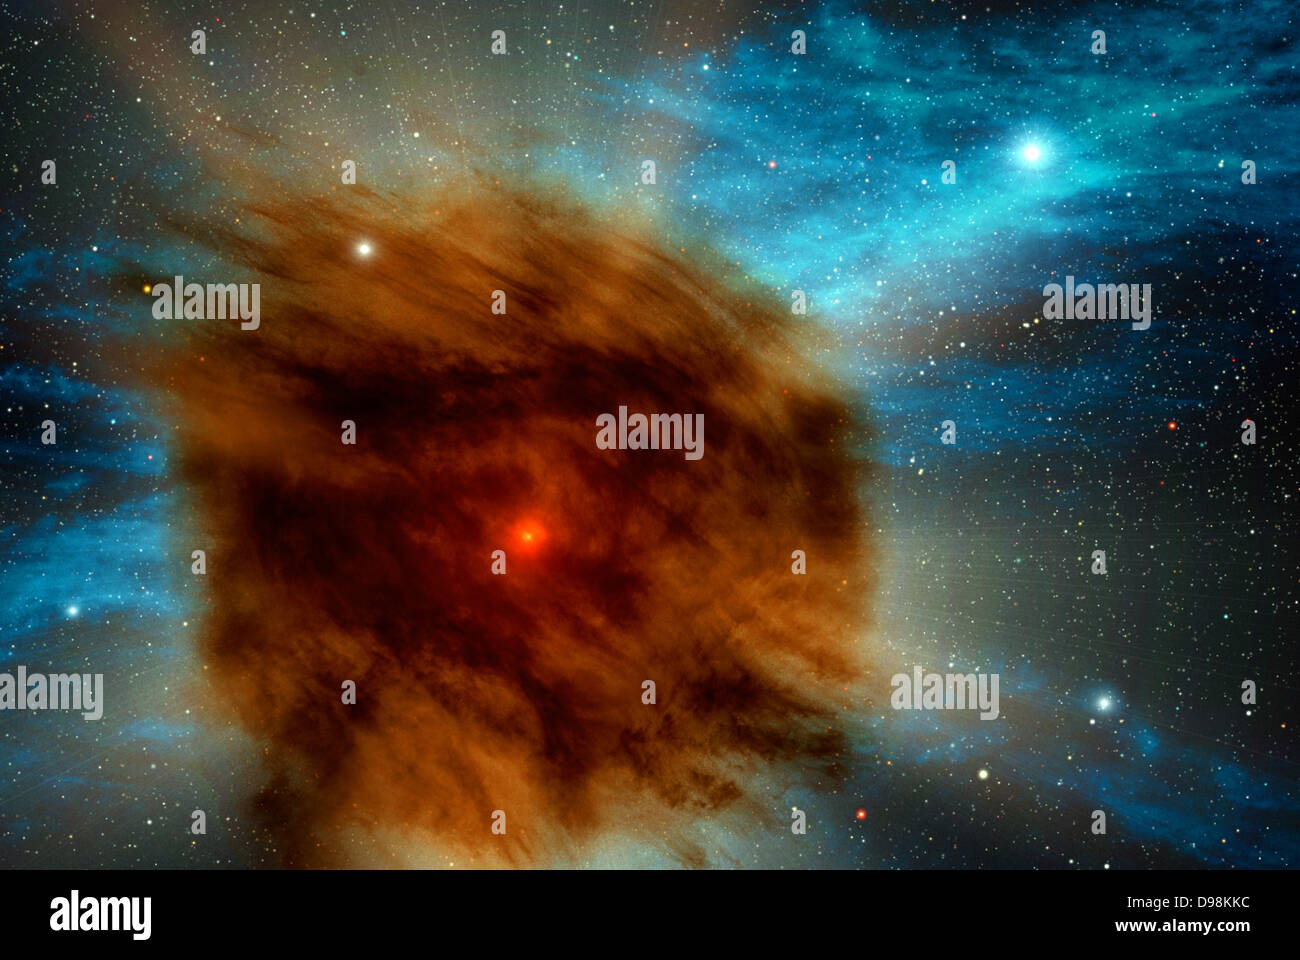 Star géant va Supernova, étouffé par son propre concept de l'artiste (Poussière) lors de la recherche dans le ciel pour les trous noirs à l'aide du télescope spatial Spitzer de la NASA, des astronomes ont découvert une supernova géante qui a été tuée dans sa propre poussière. Dans cette vue d'artiste, une enveloppe extérieure de gaz et de poussière, qui a éclaté à partir de l'étoile il y a des centaines d'années obscurcit la supernova à l'intérieur. Cet événement dans une galaxie éloignée allusion à un avenir possible à l'étoile la plus brillante dans notre propre Voie lactée. Banque D'Images